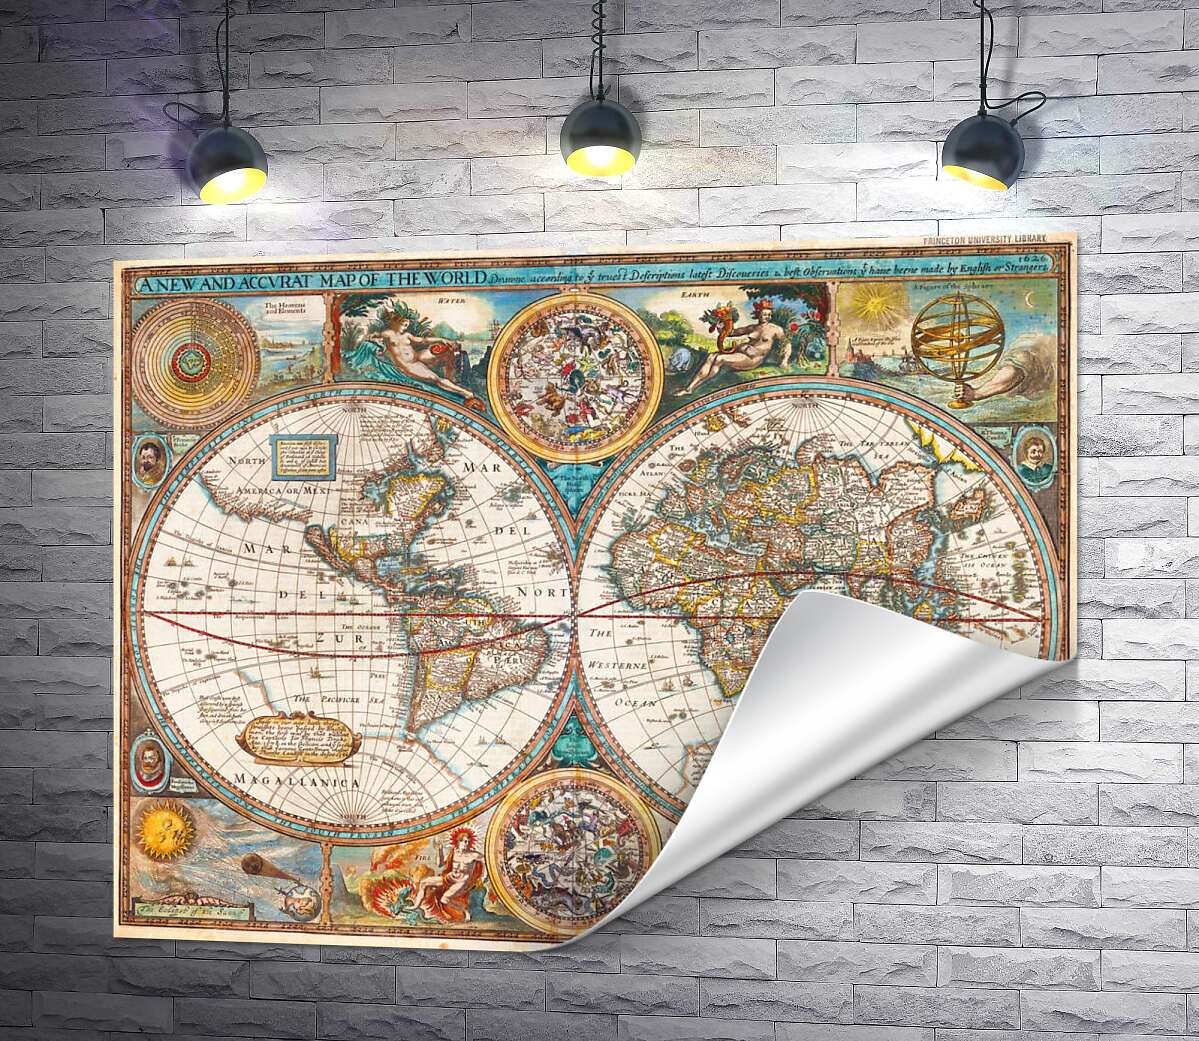 друк Географічна карта "Нового світу" 1627 року, авторства картографа Джона Спіда (John Speed)